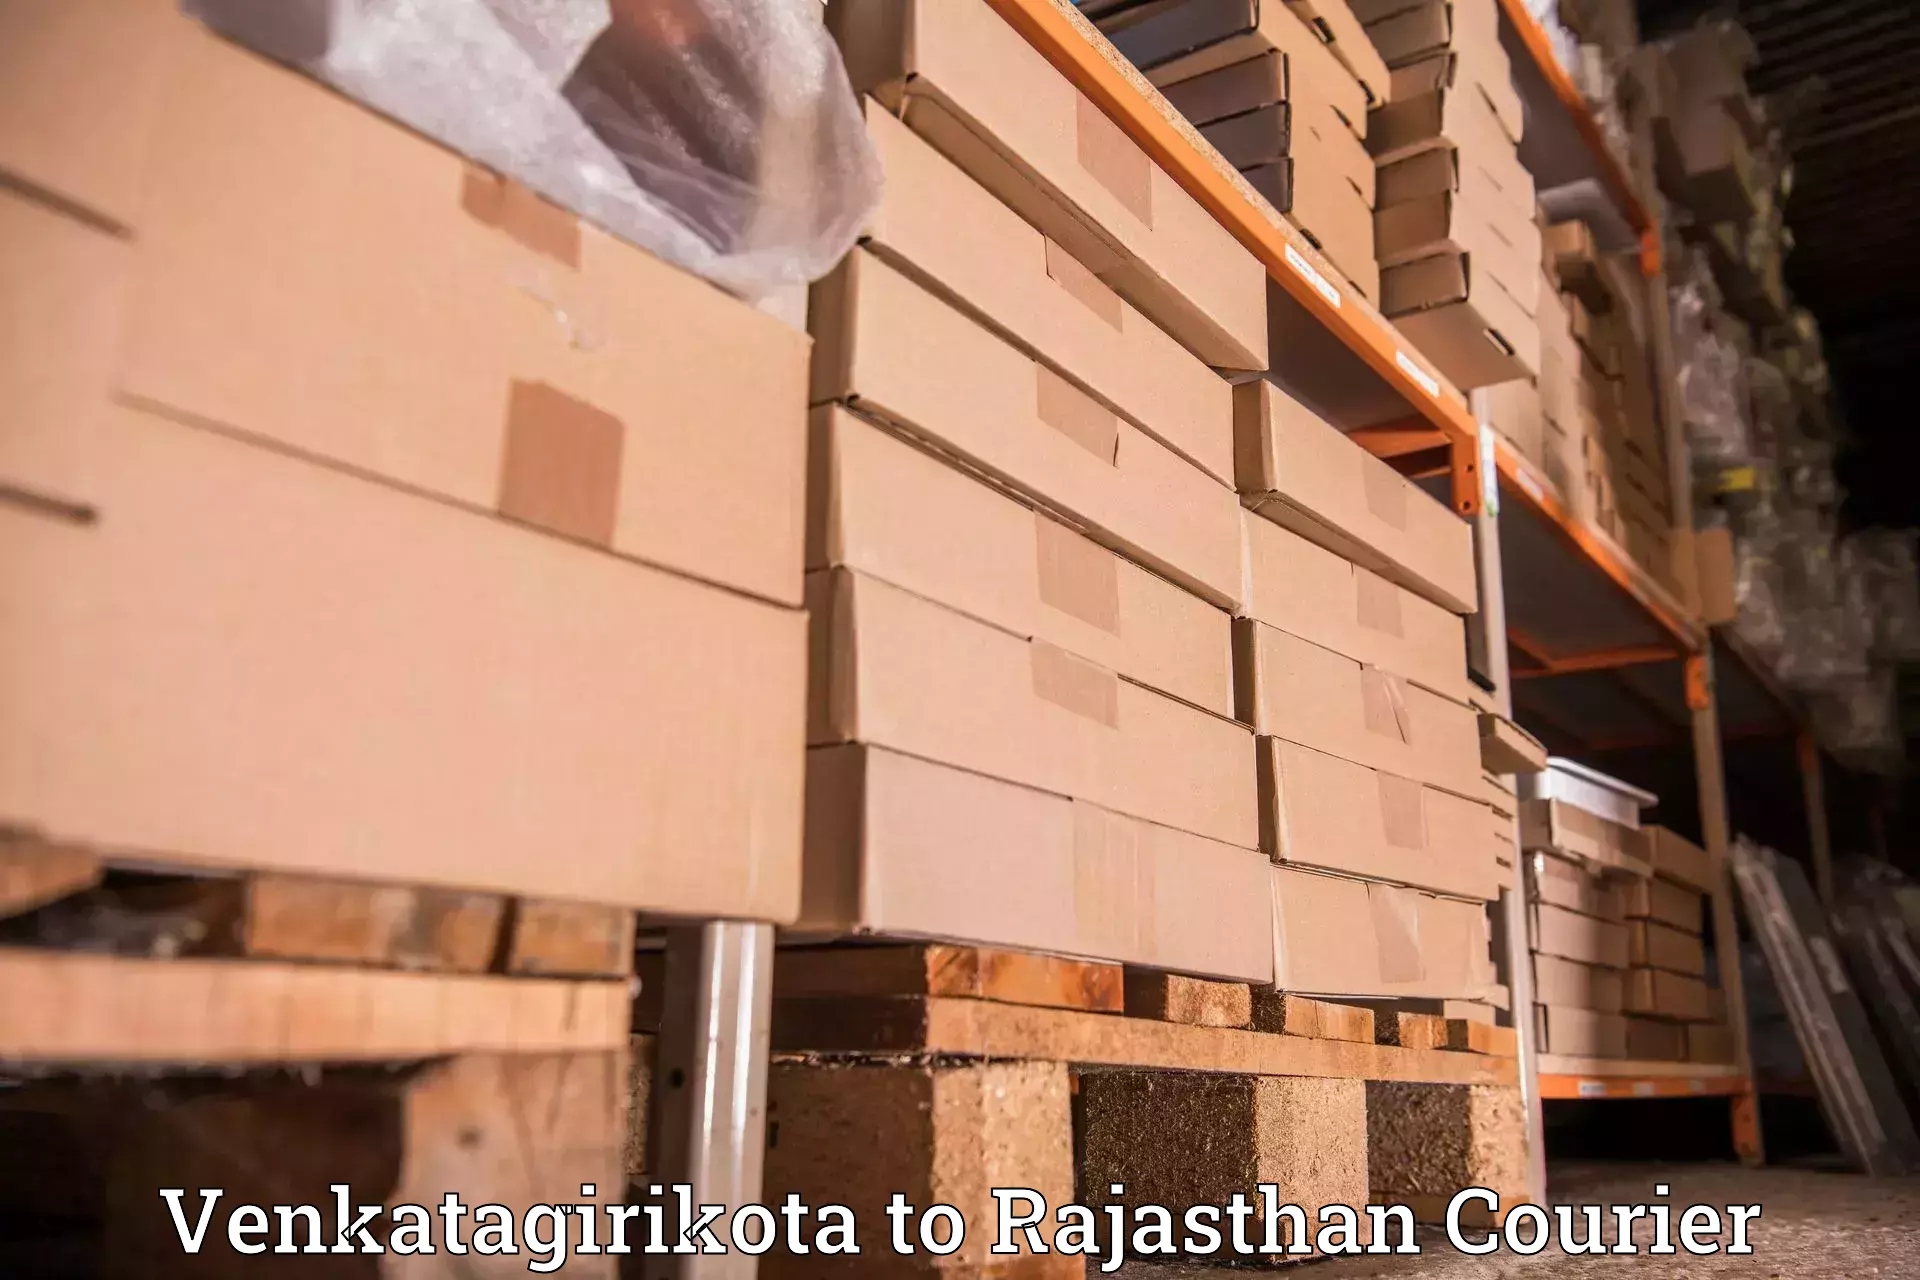 Sustainable shipping practices Venkatagirikota to Raila